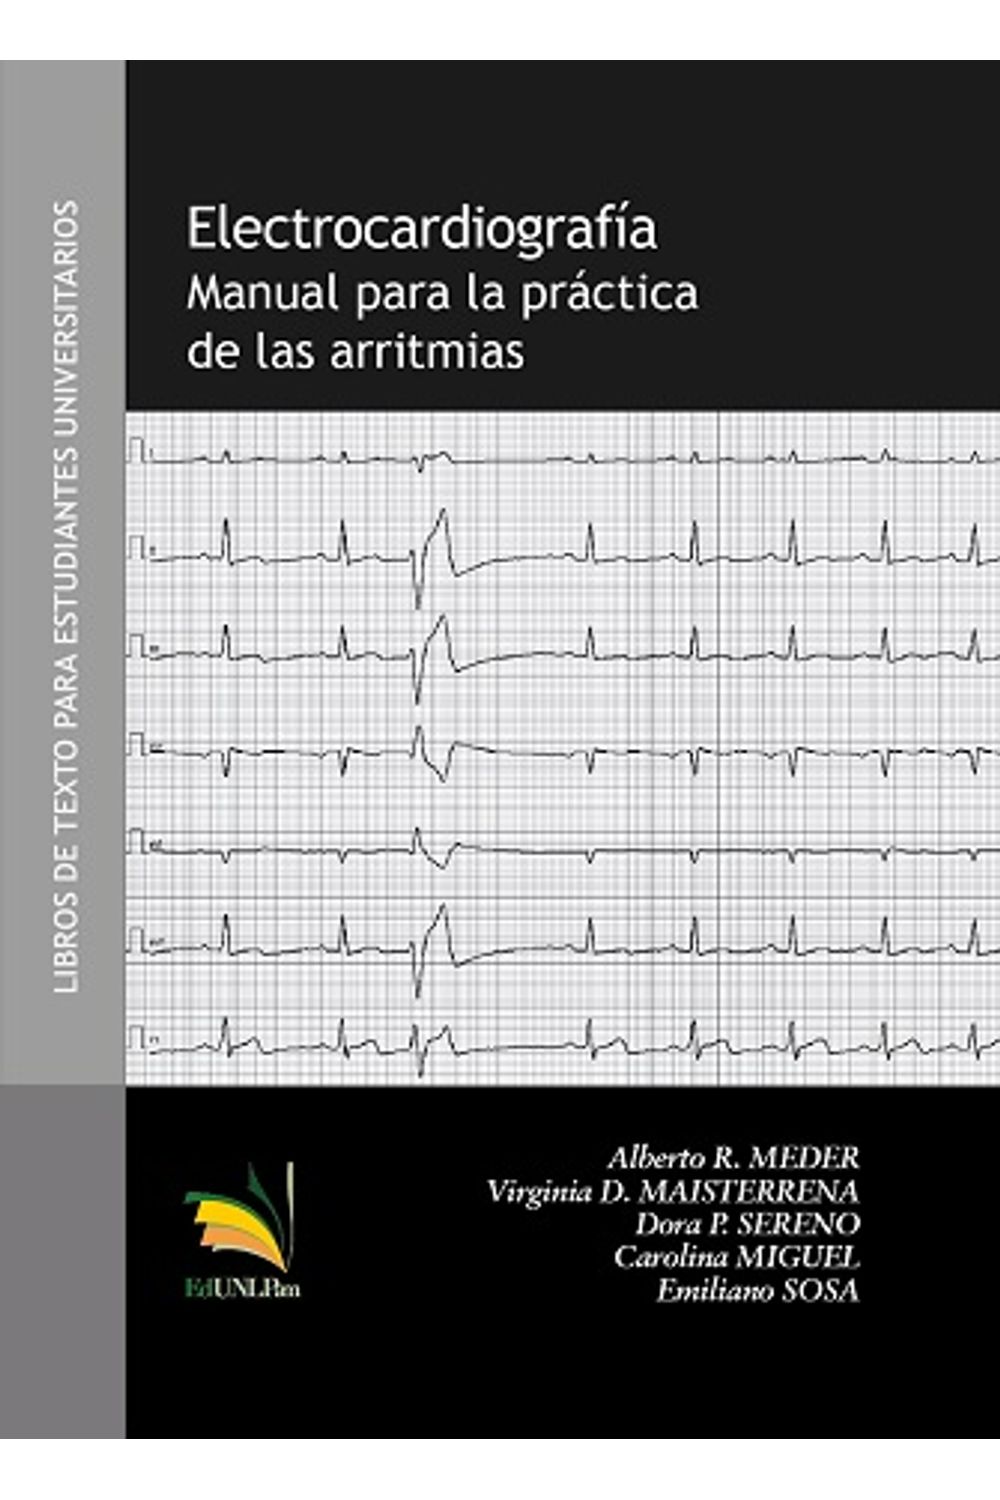 electrocardiografia-9789508633385-argentina-silu